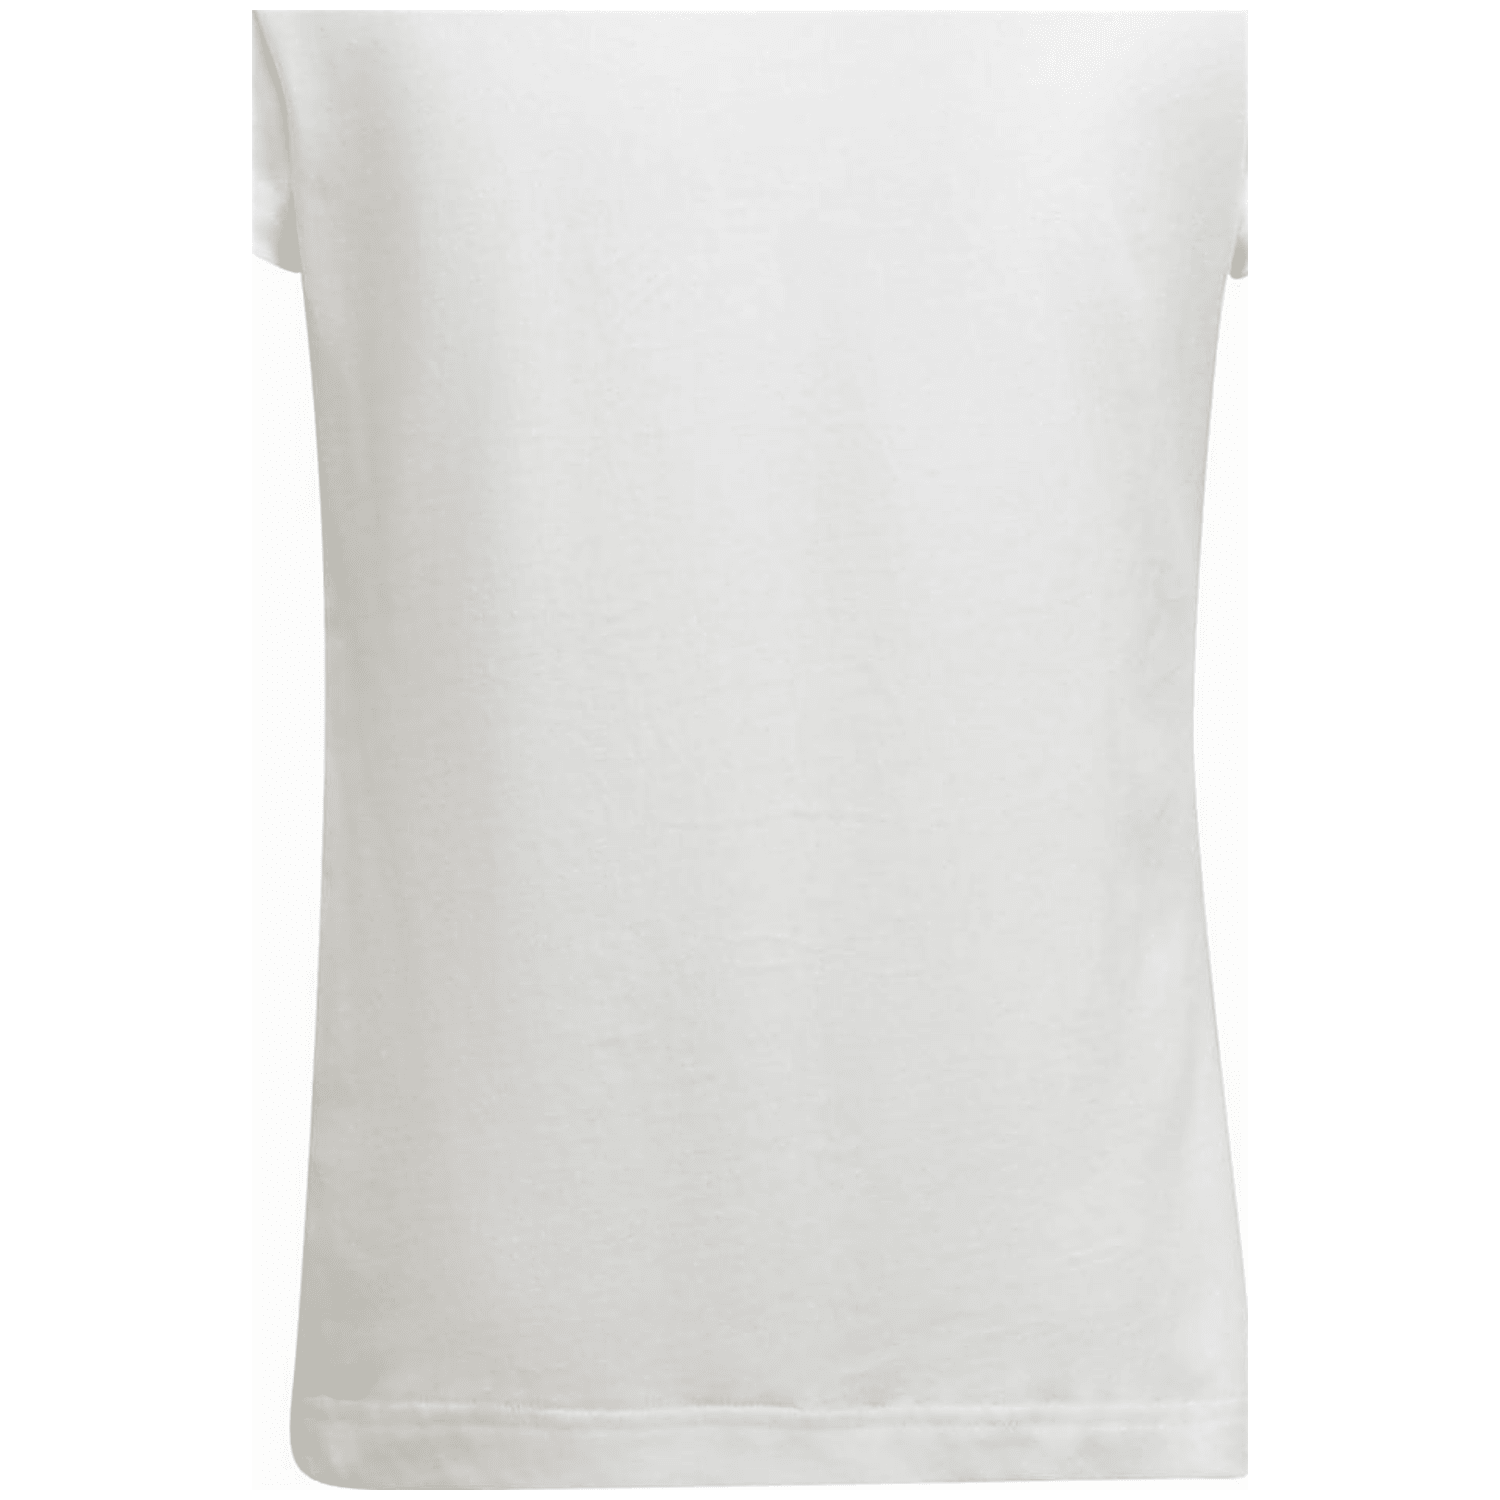 Adidas Essentials T-Shirt Mädchen